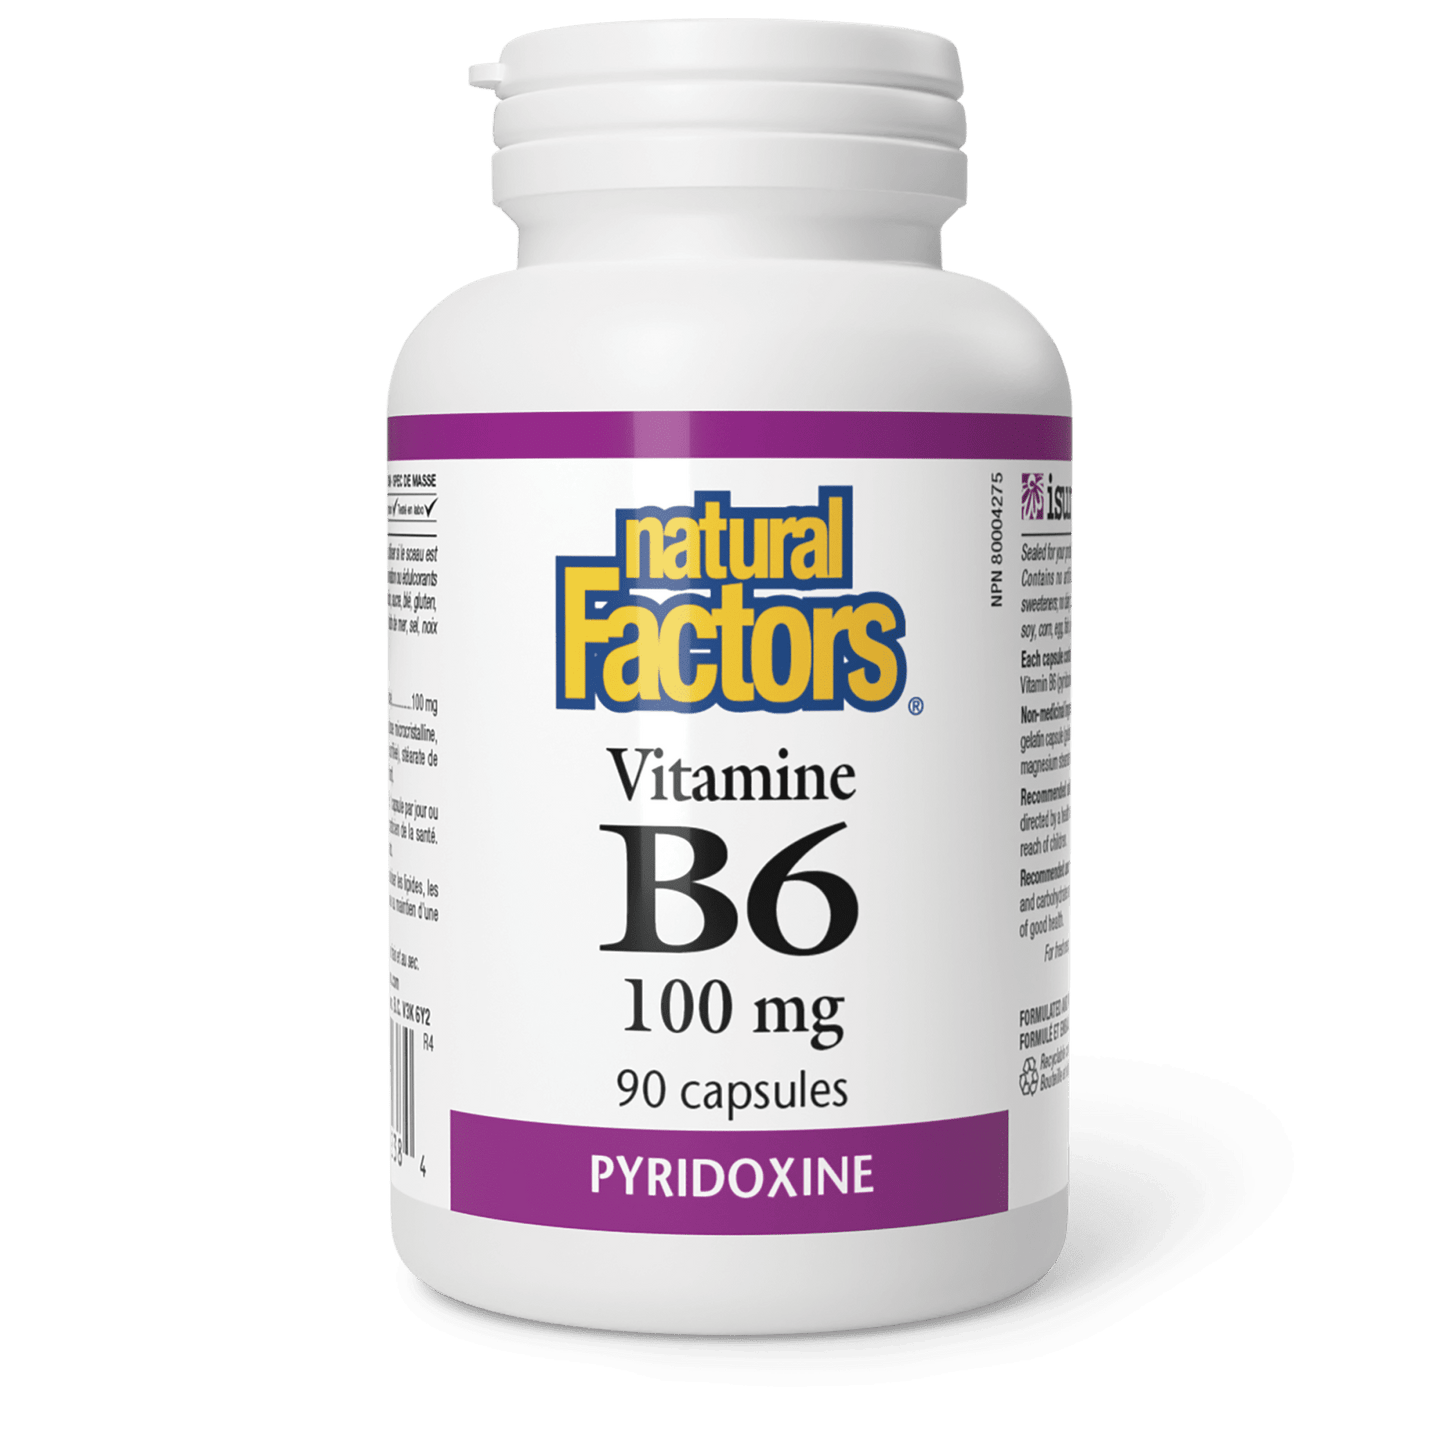 Vitamine B6 100 mg, Natural Factors|v|image|1238